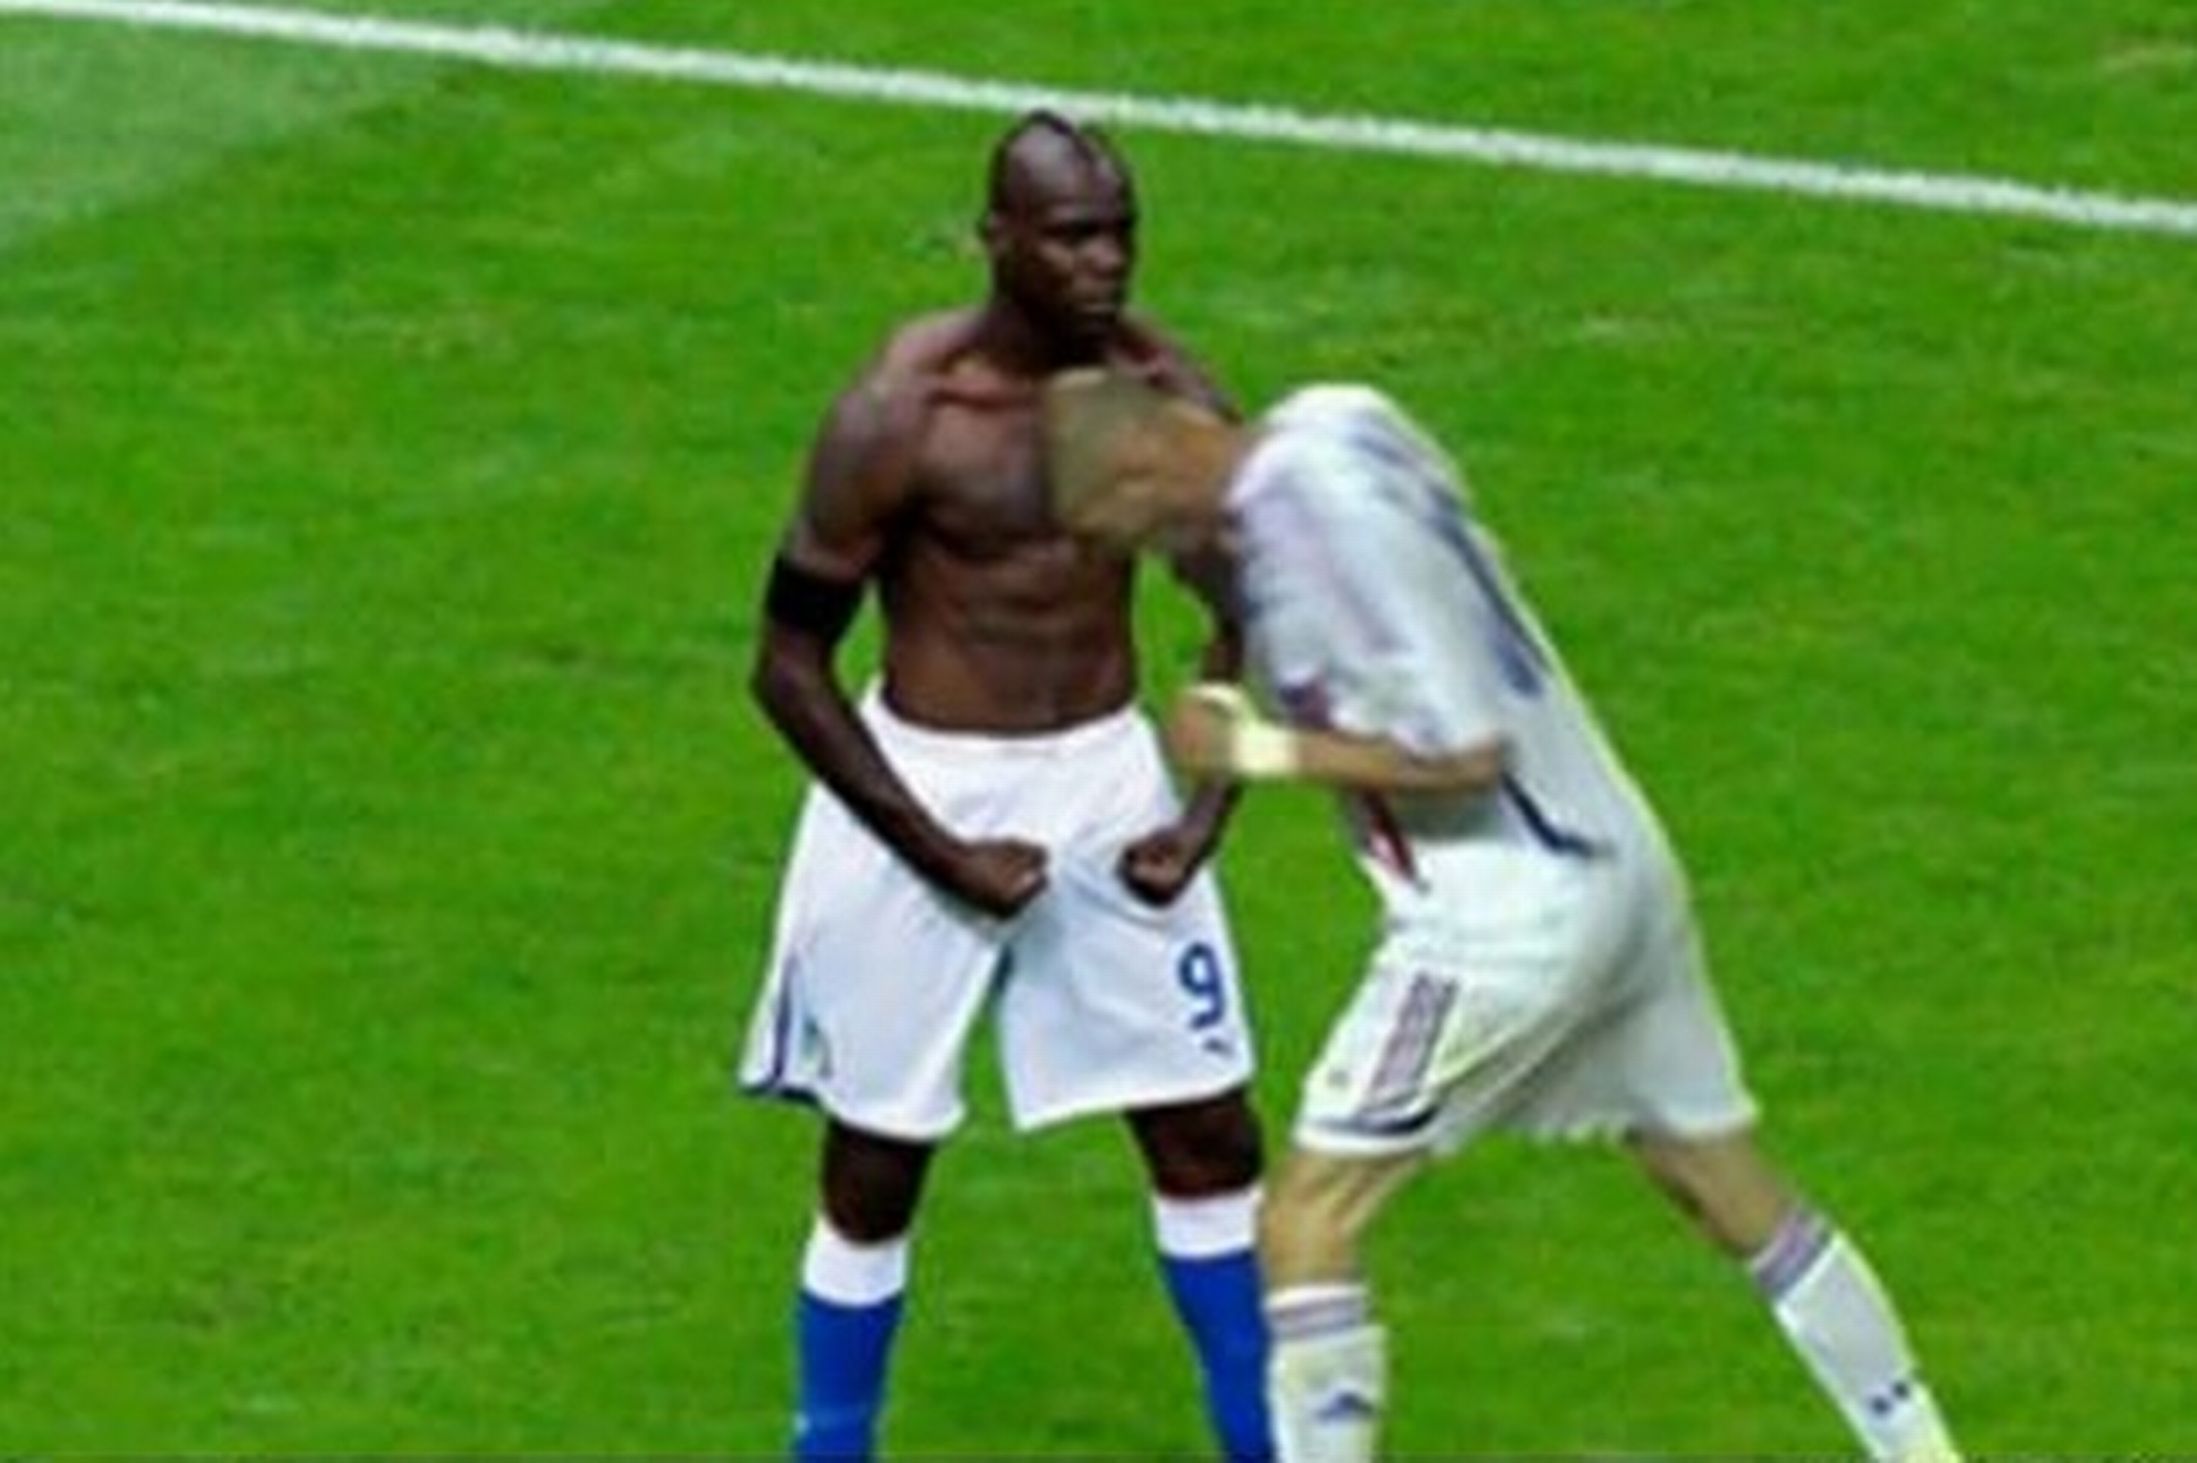 Hade Zinedine Zidane skallat Balotelli istället för Marco Materazzi så hade Super-Mario stått kvar.